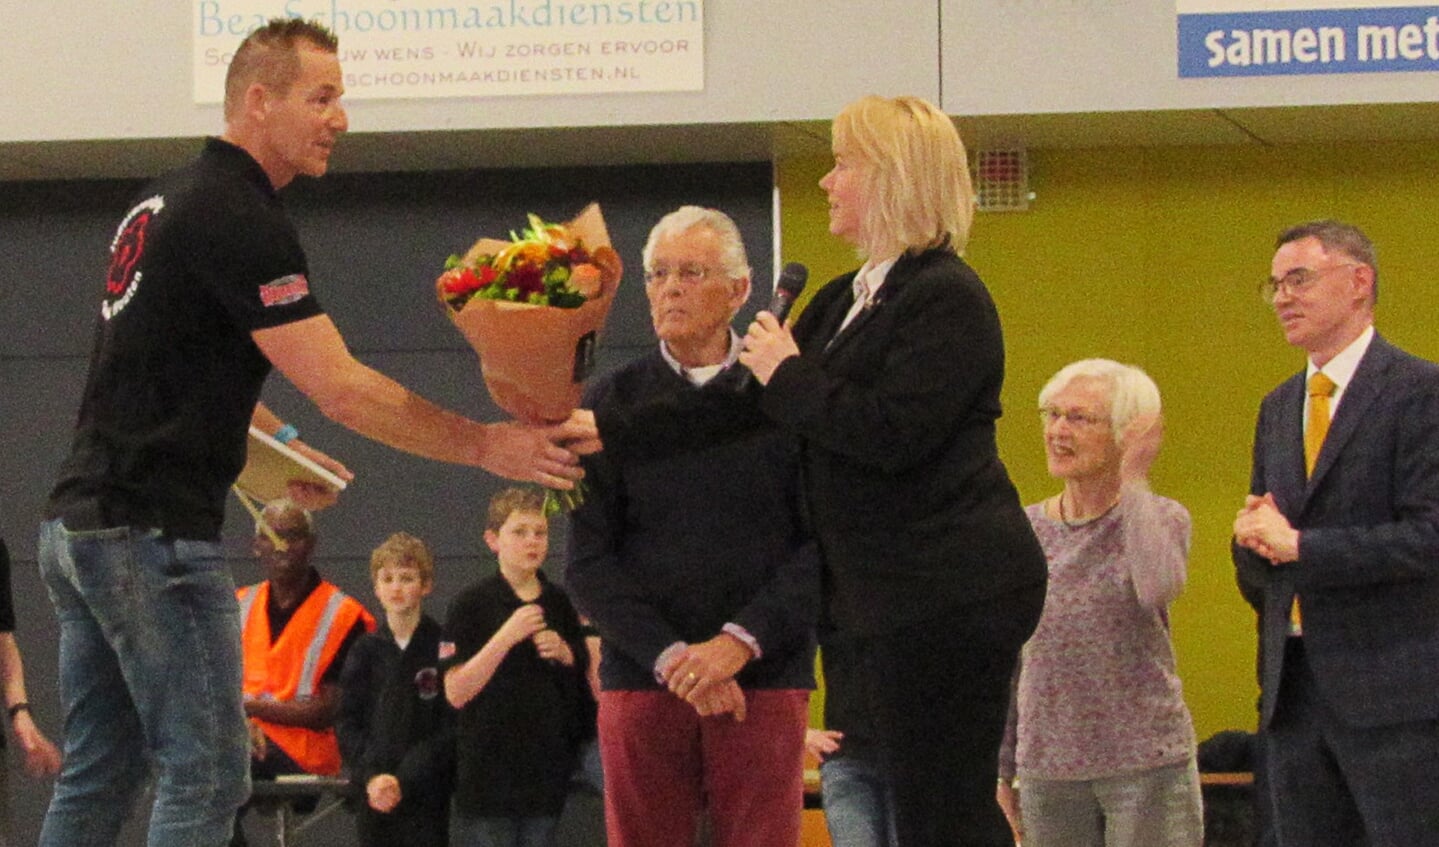 Ron van Lamoen krijgt uit handen van Jessica Boer een districtsonderscheiding  en bloemen uitgereikt.